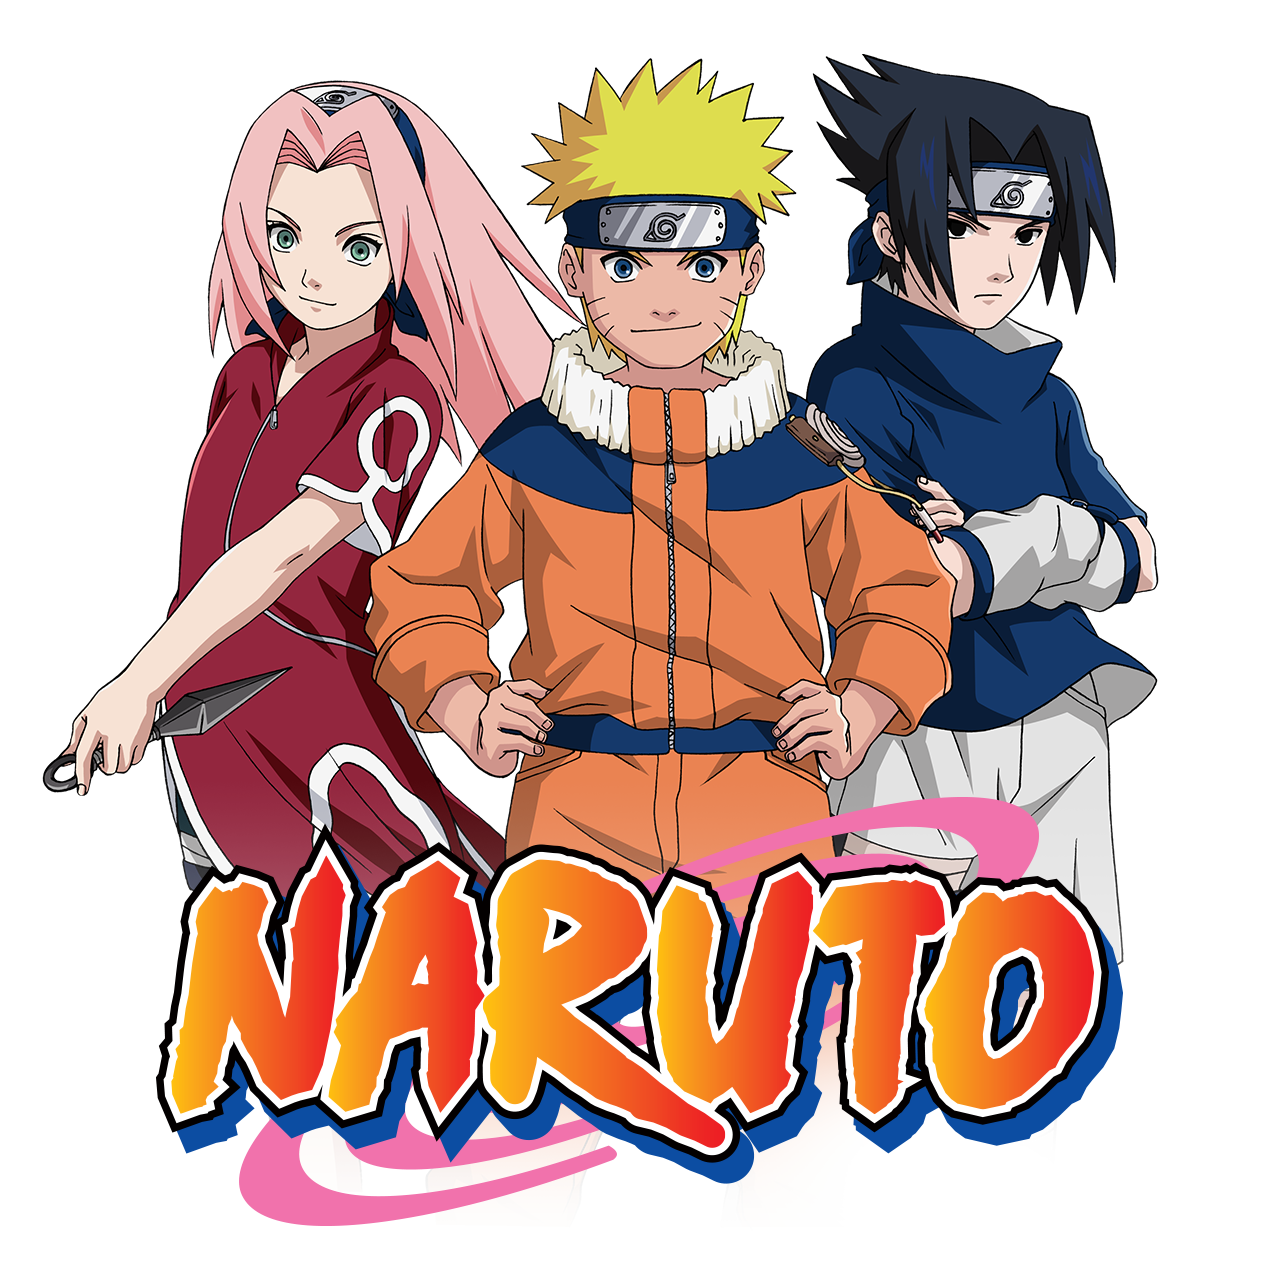 Phim hoạt hình Naruto chính thức được mua bản quyền chiếu tại Việt Nam